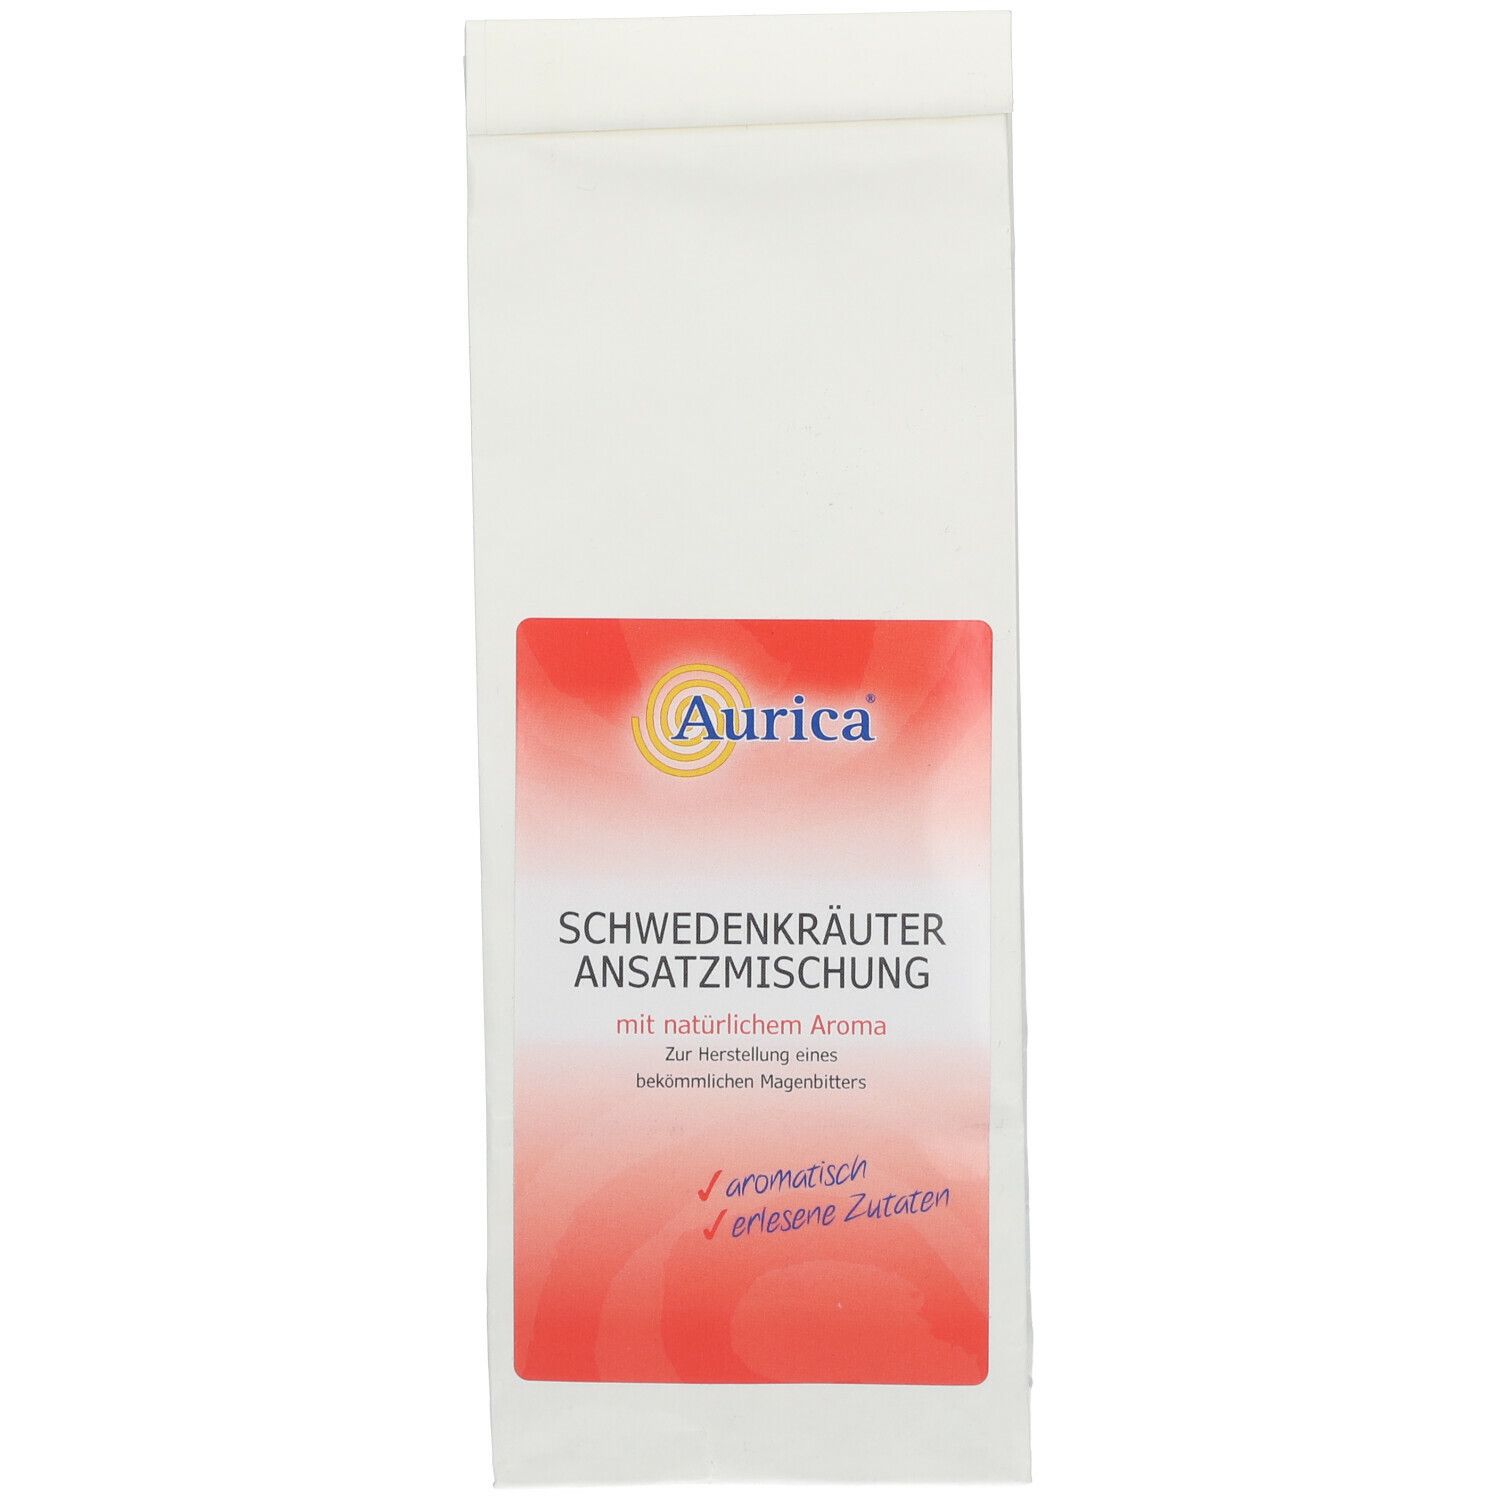 Aurica® Schwedenkräuter Ansatzmischung